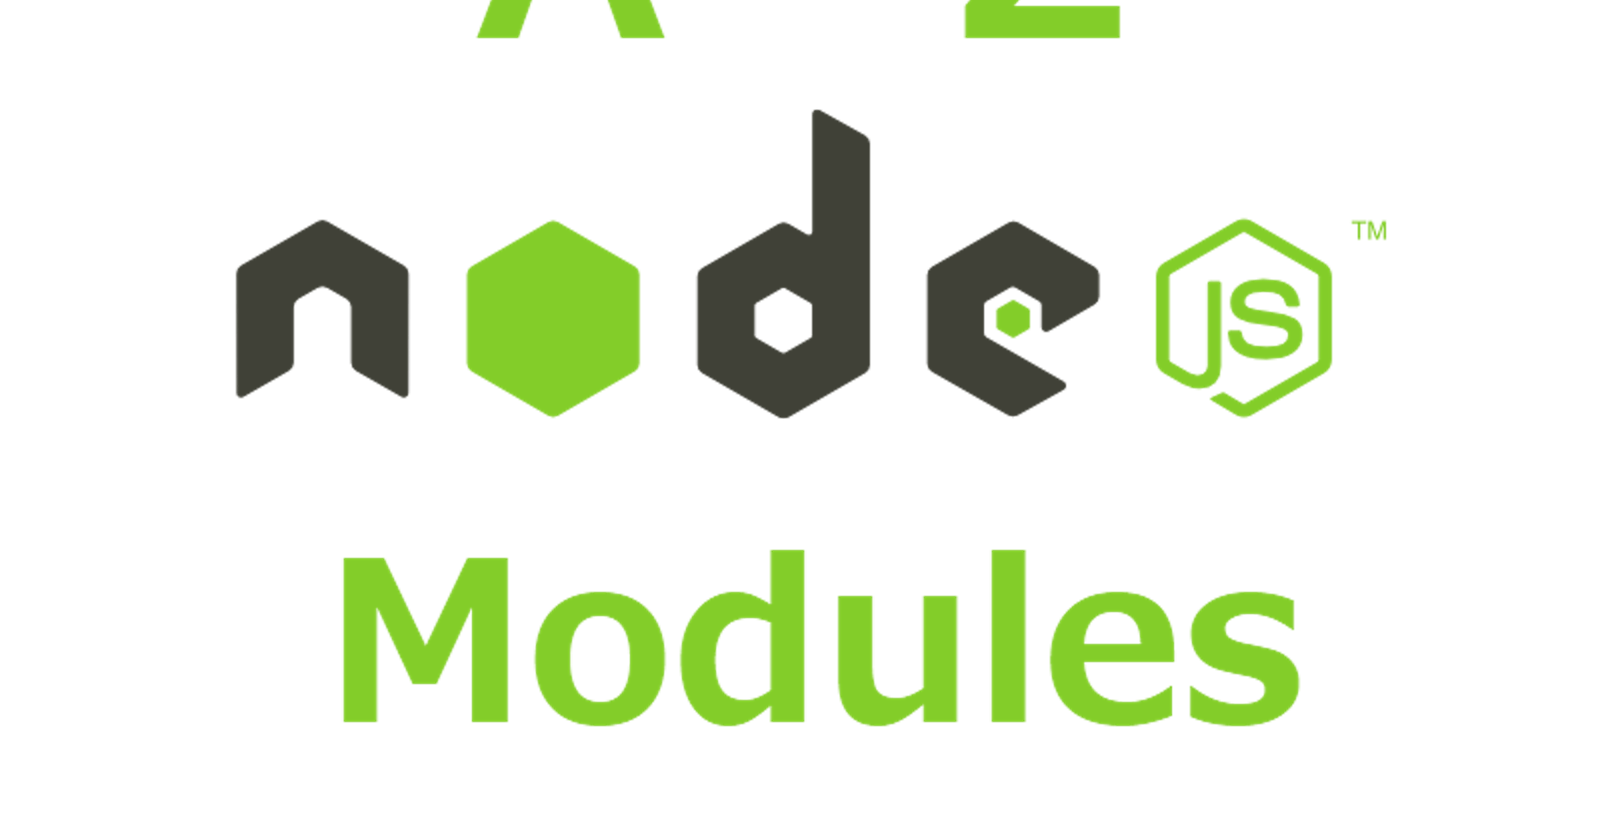 Understanding Node.js Modules